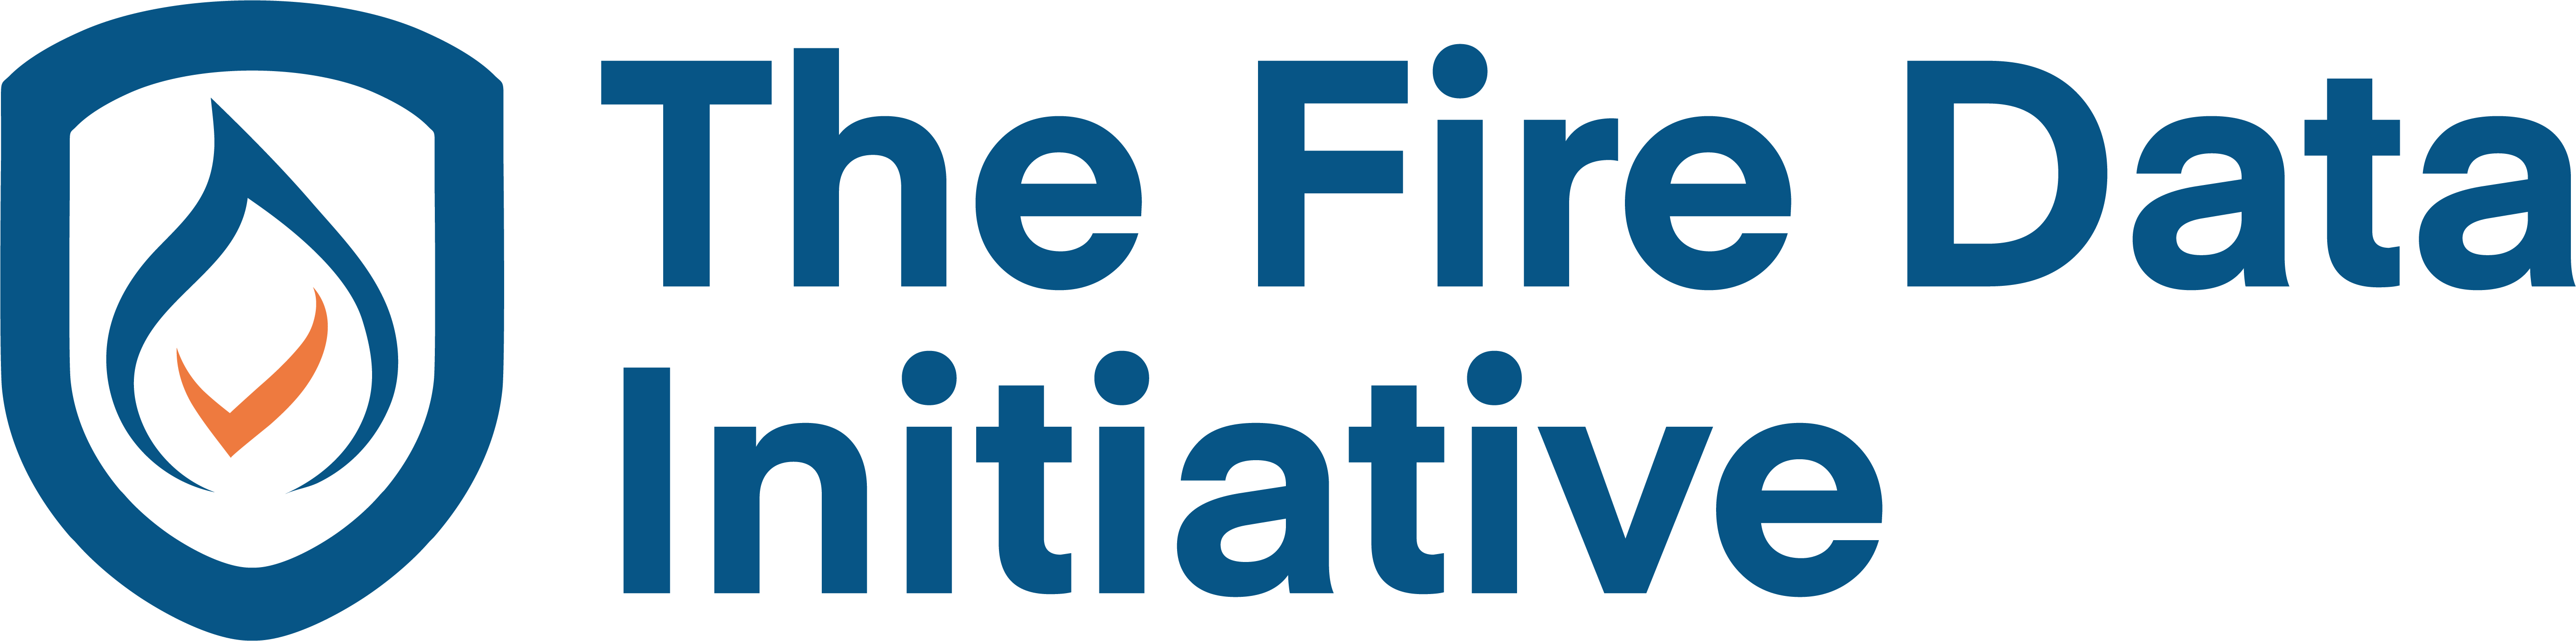 The Fire Data Initiative